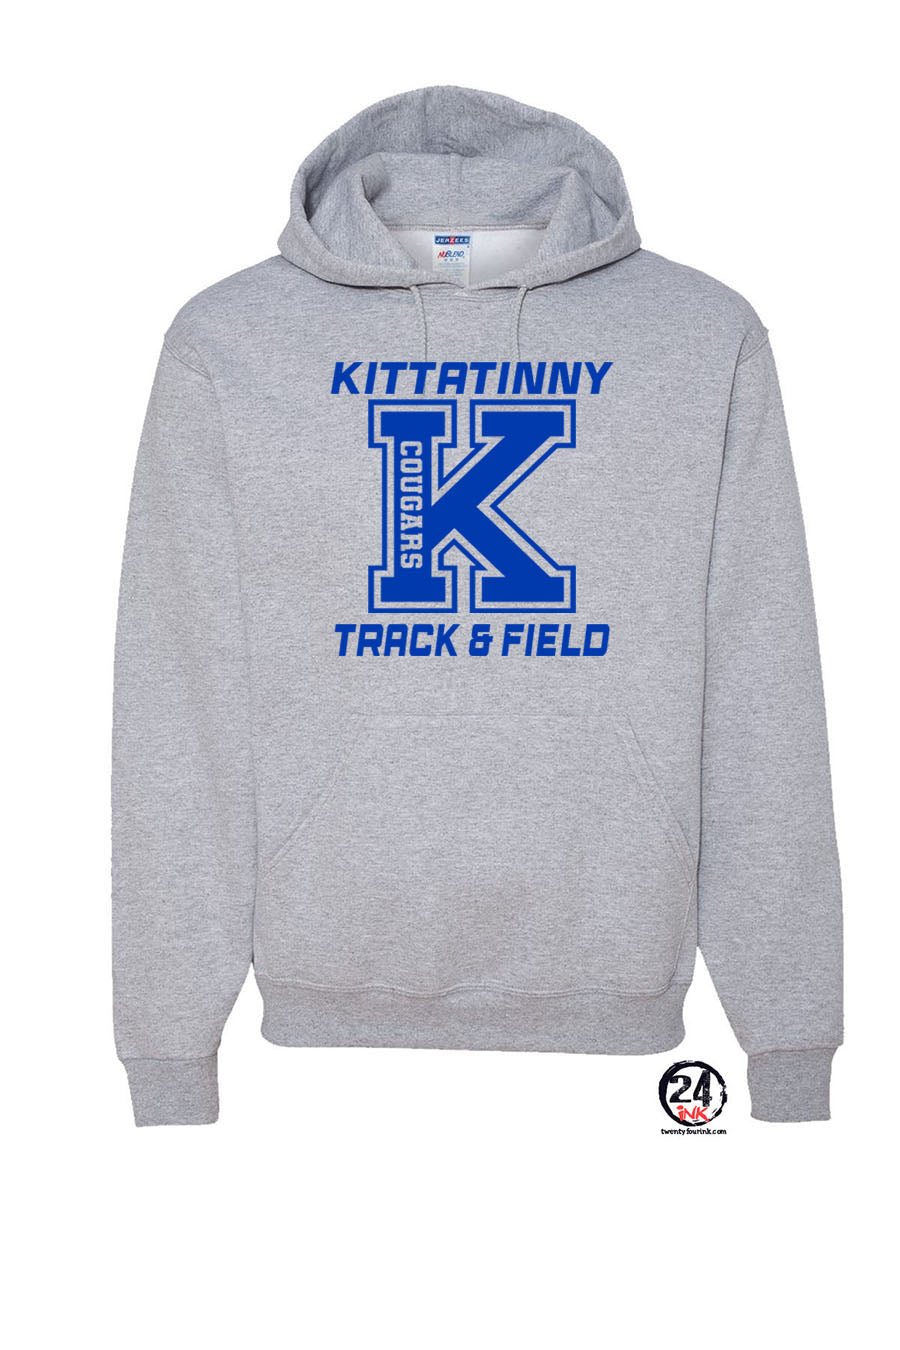 Kittatinny Track Design 3 Hooded Sweatshirt